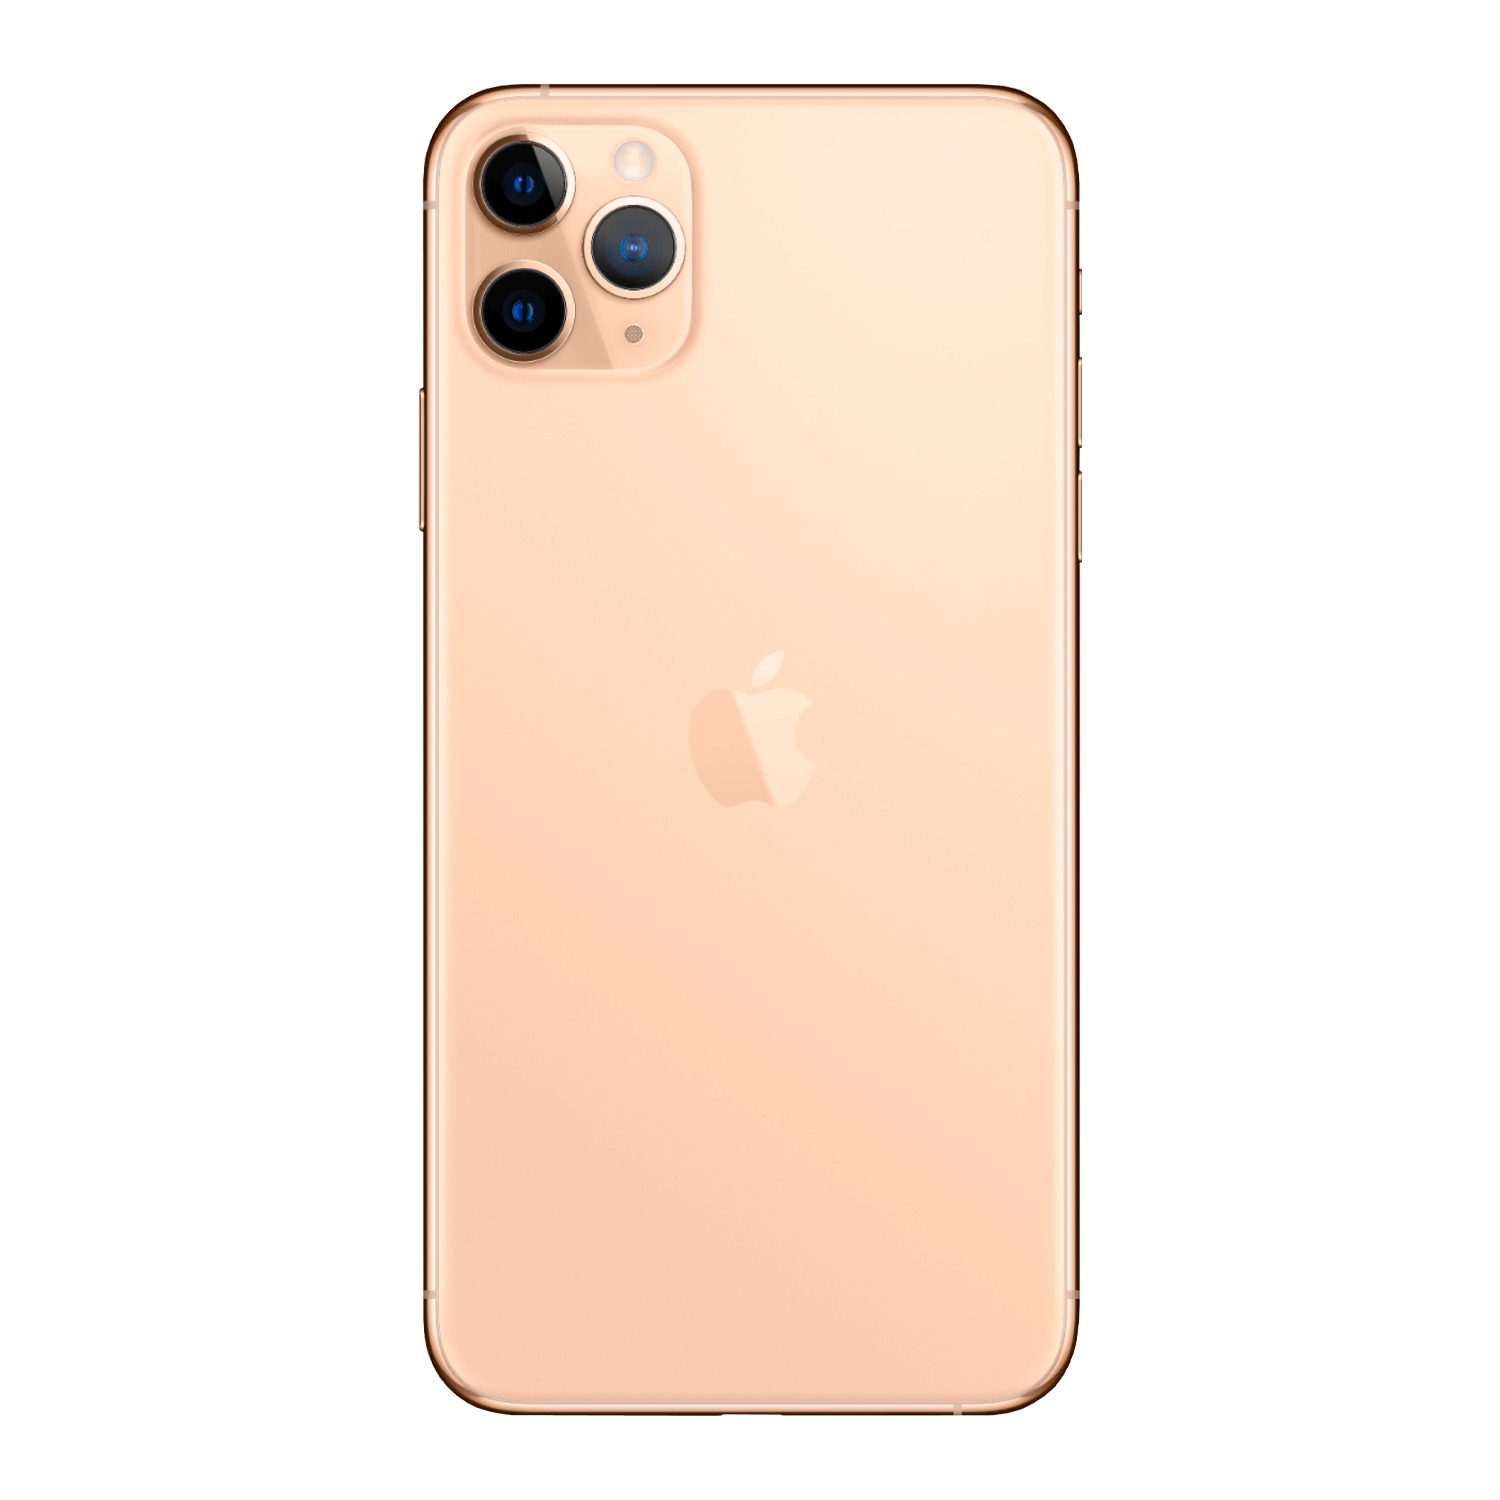 Apple iPhone 11 Pro Max *Swap A* 64GB 4GB RAM Tela 6.5" - Dourado (Somente Aparelho)